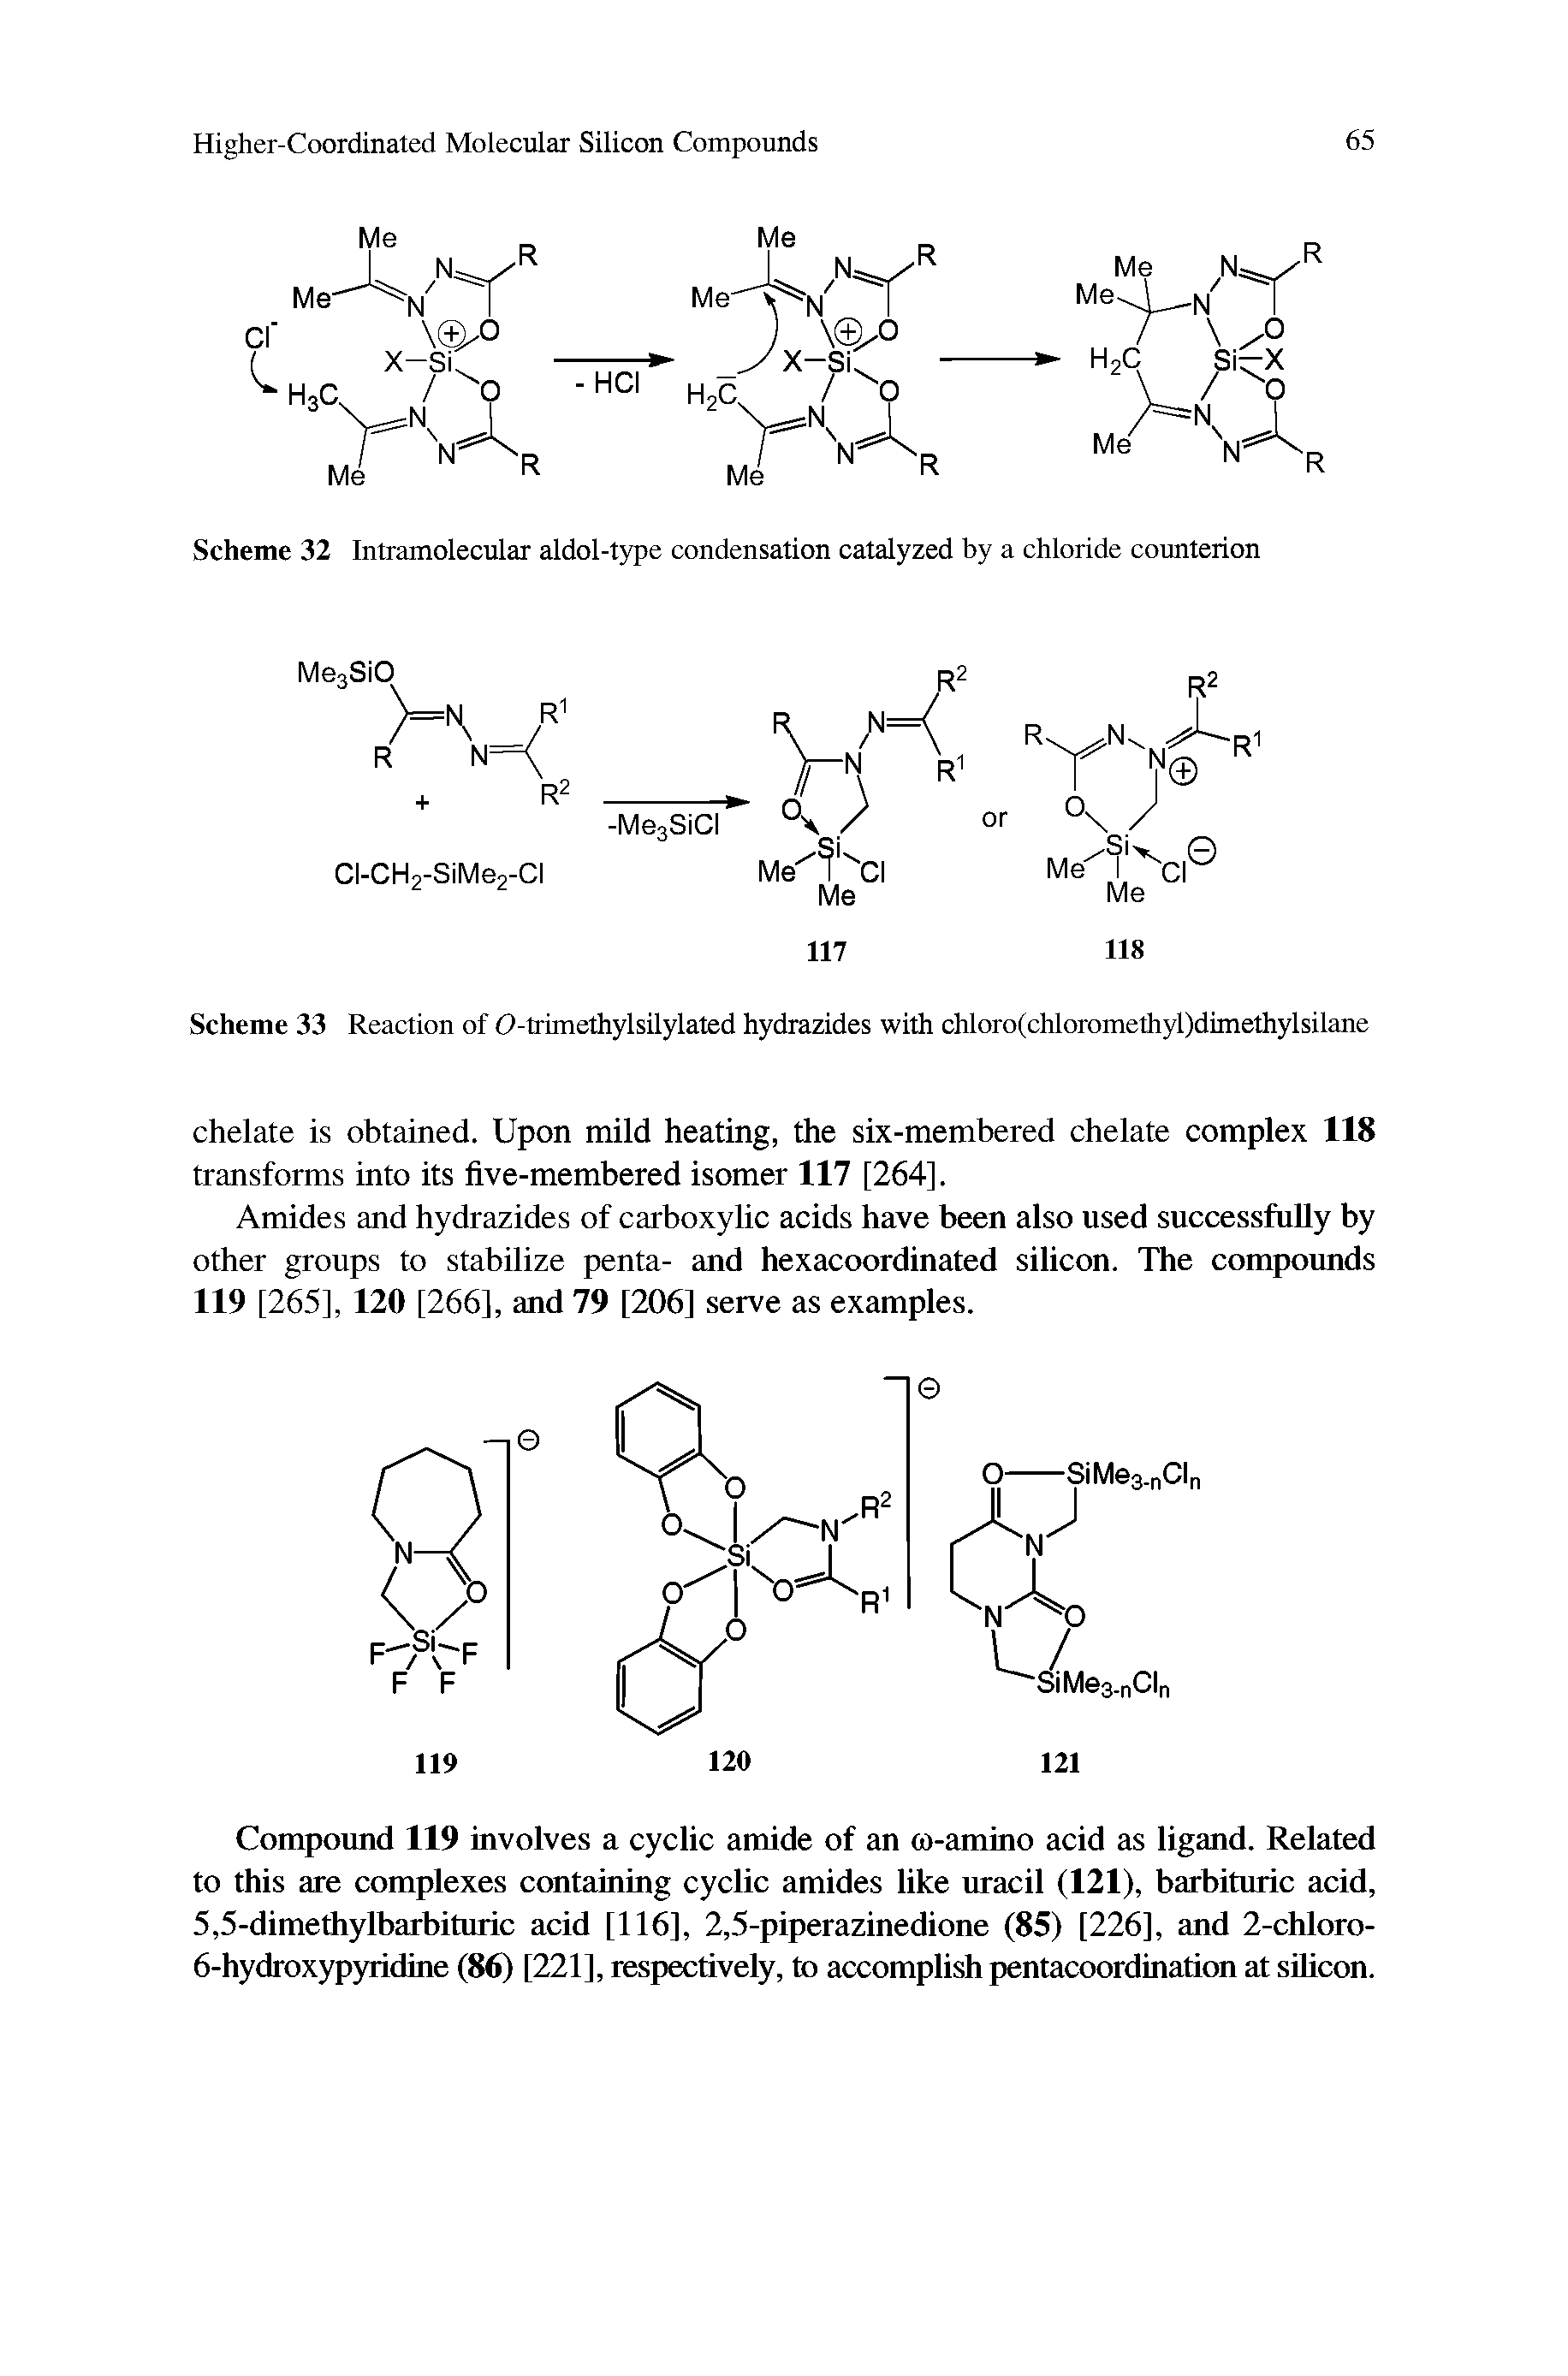 Scheme 33 Reaction of O-trimethylsilylated hydrazides with chloro(chloromethyl)dimethylsilane...